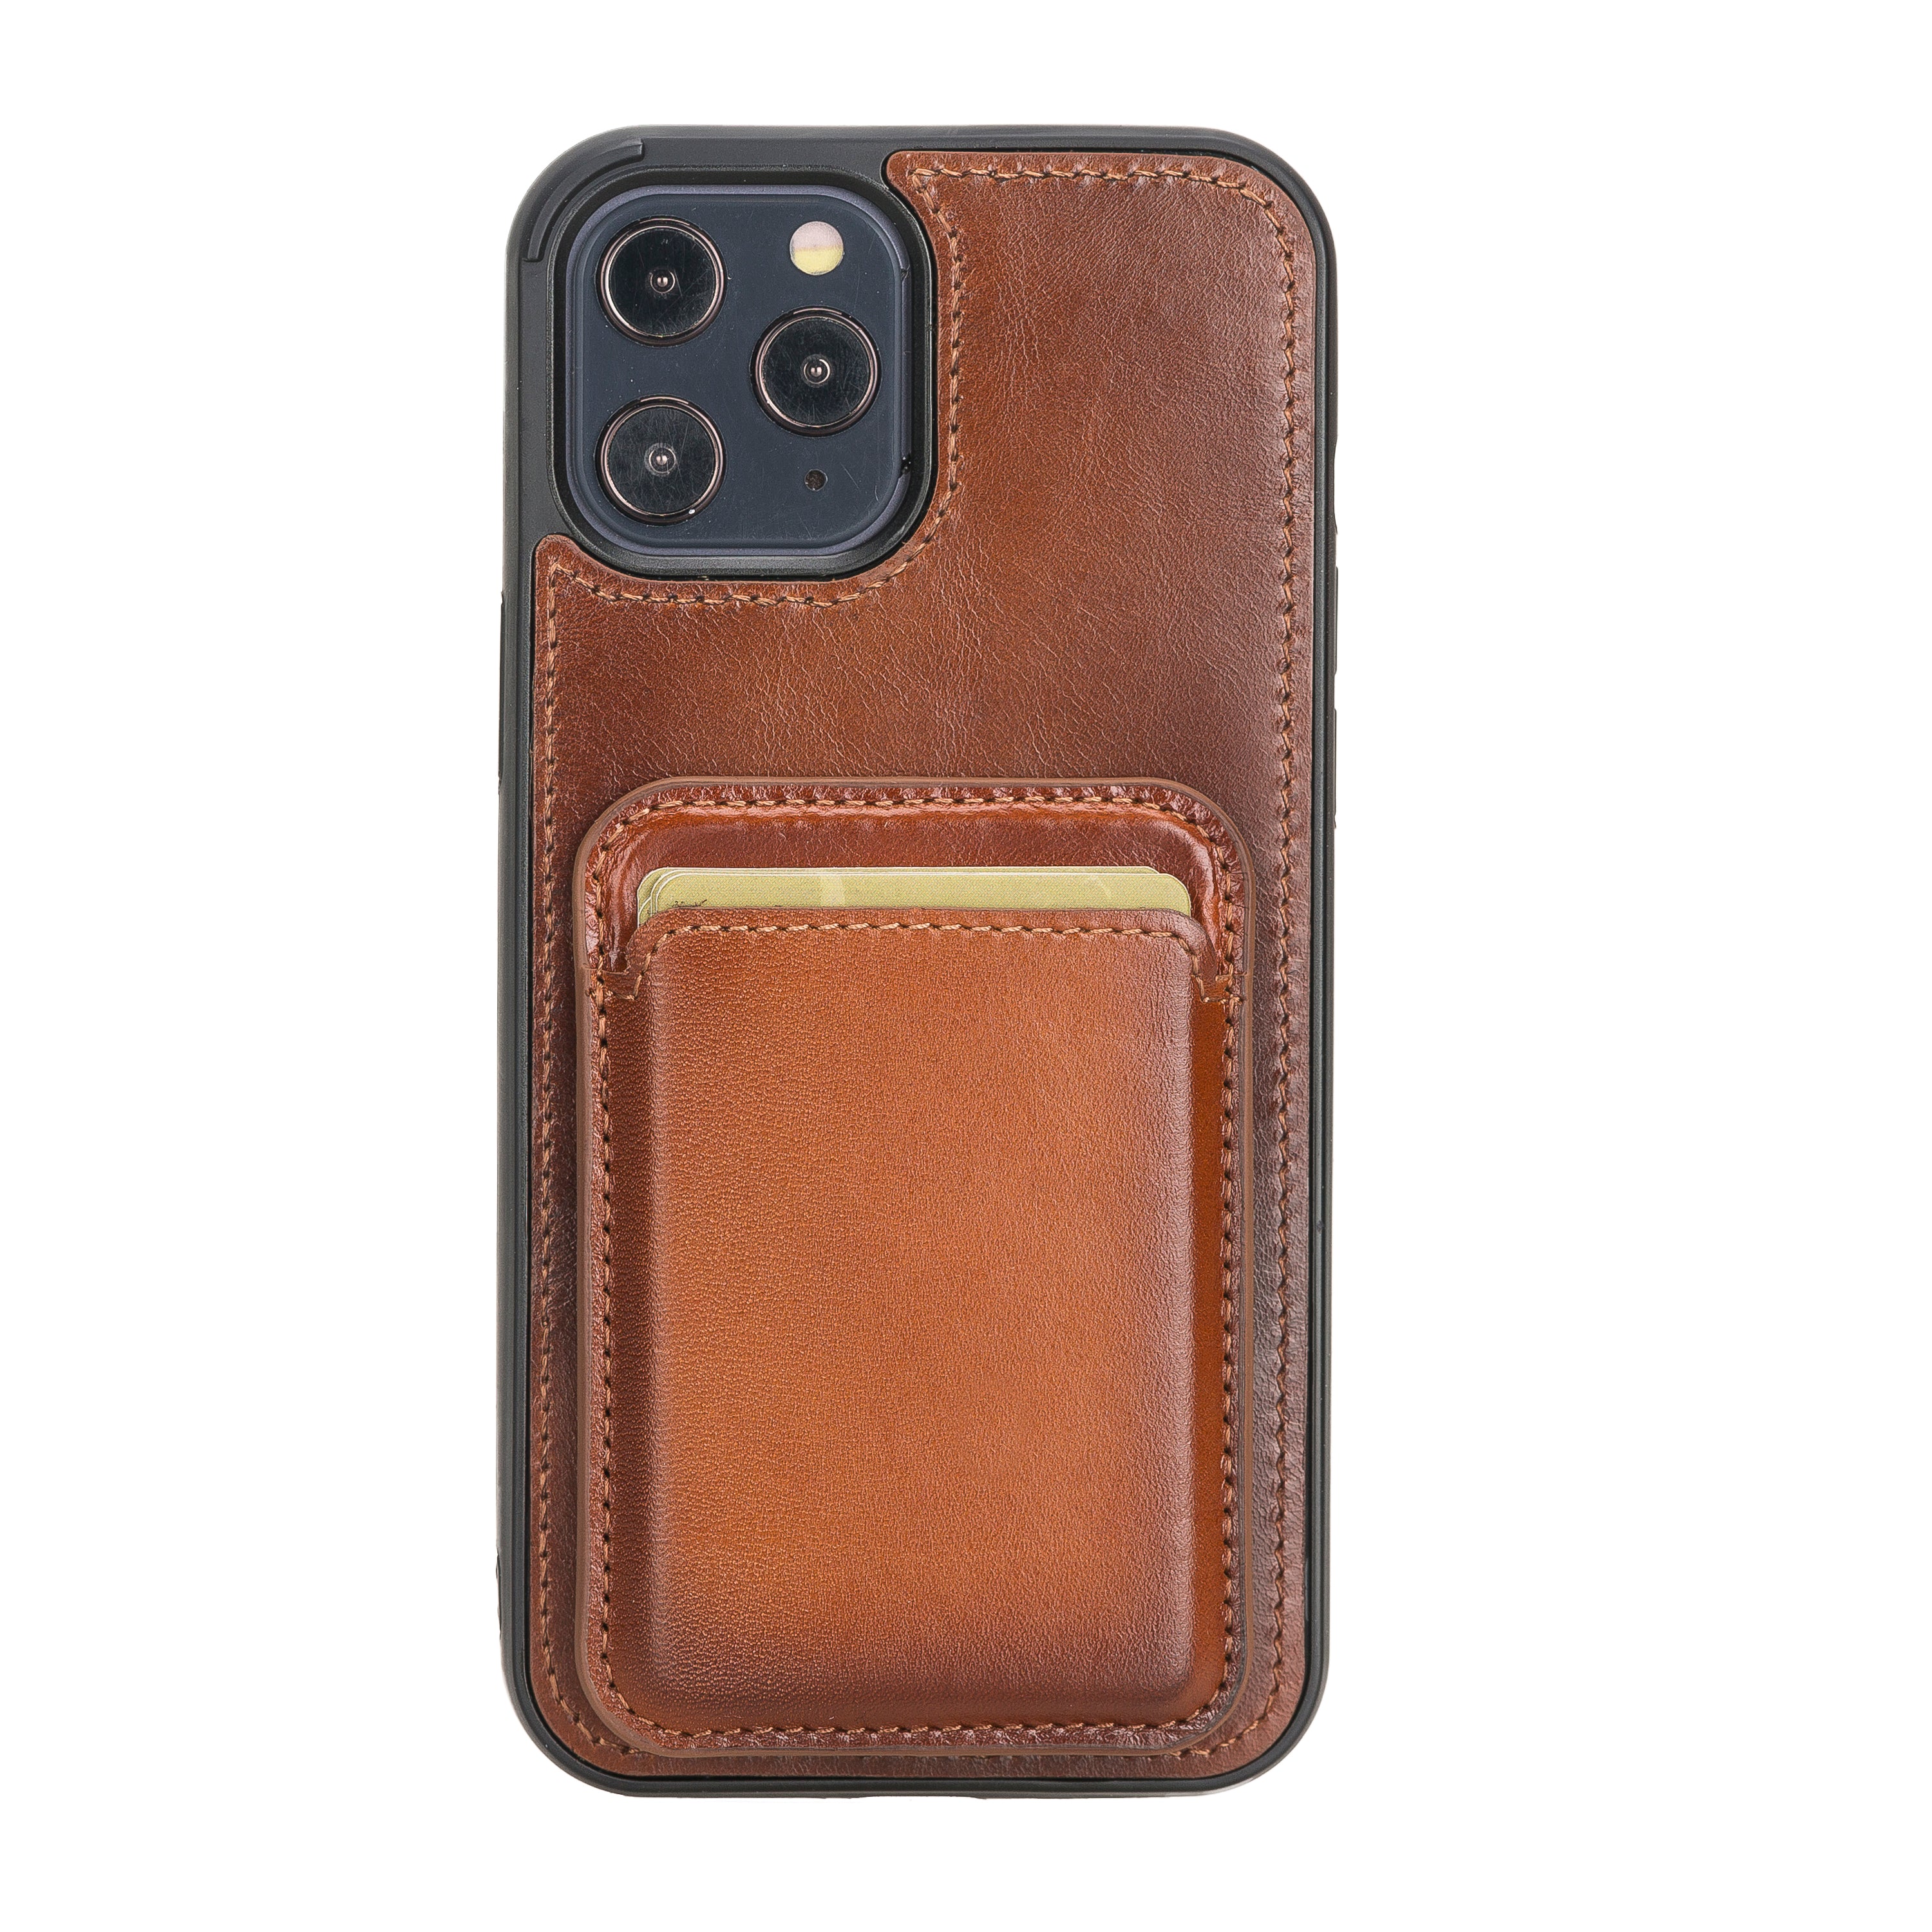 Voor u Cirkel Naar de waarheid Leather Magnetic Wallet with Cover Case for iPhone 13 Pro Max (6.7") –  O2Leather